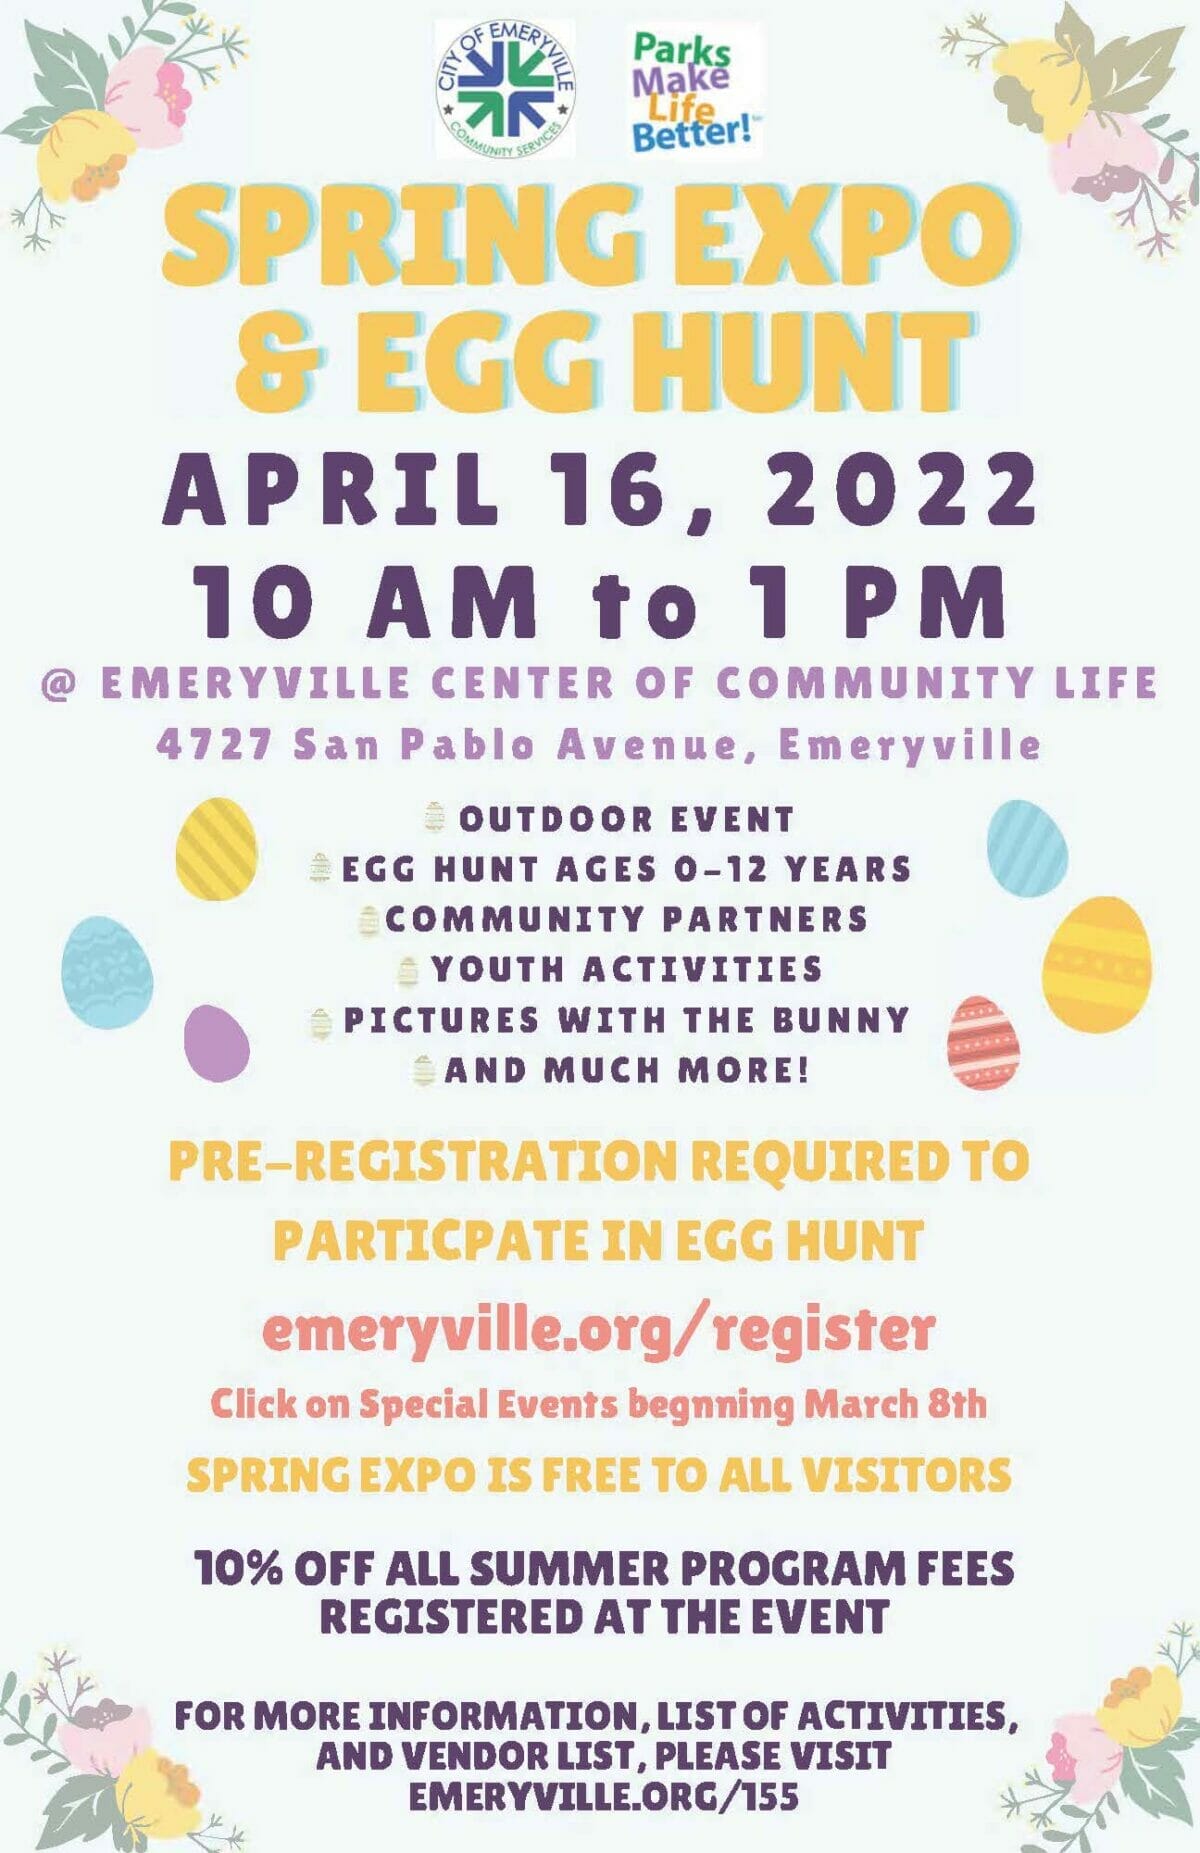 Emeryville Spring Expo & Egg Hunt | Emeryville CCL